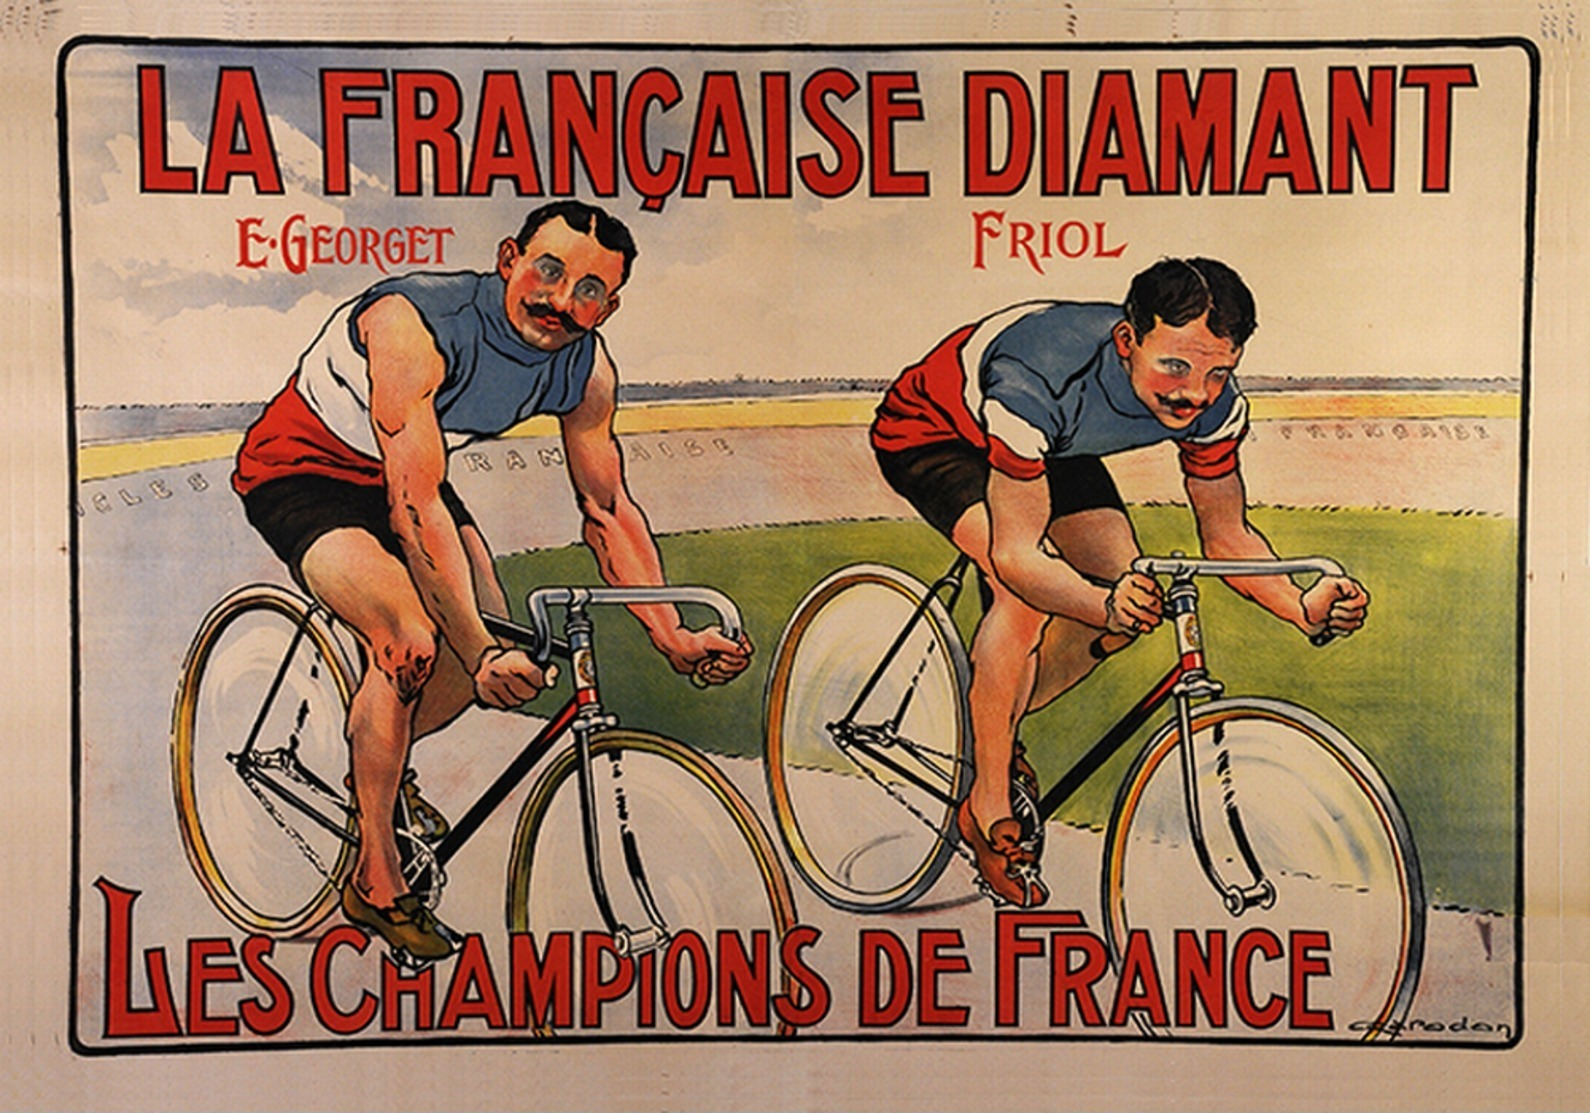 Cycle Postcard La Francaise Diamant E.Georget Friol Les Champions De France - Reproduction - Pubblicitari